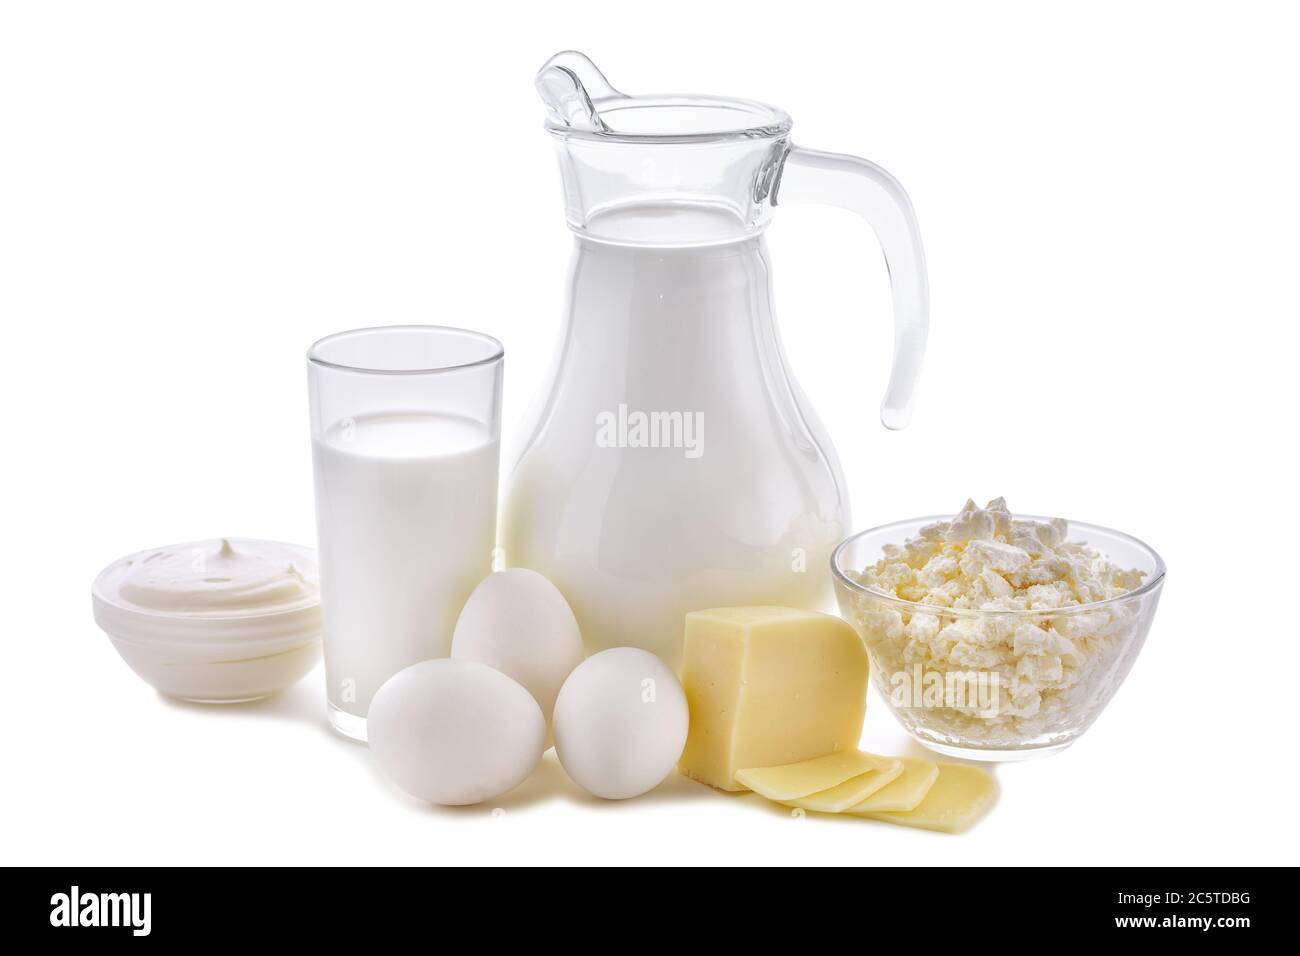 Productos lácteos sobre fondo blanco. Leche, queso cottage, crema agria, queso, mantequilla, huevos, vida de productos lácteos saludables. La nutrición de la lechería es Foto de stock